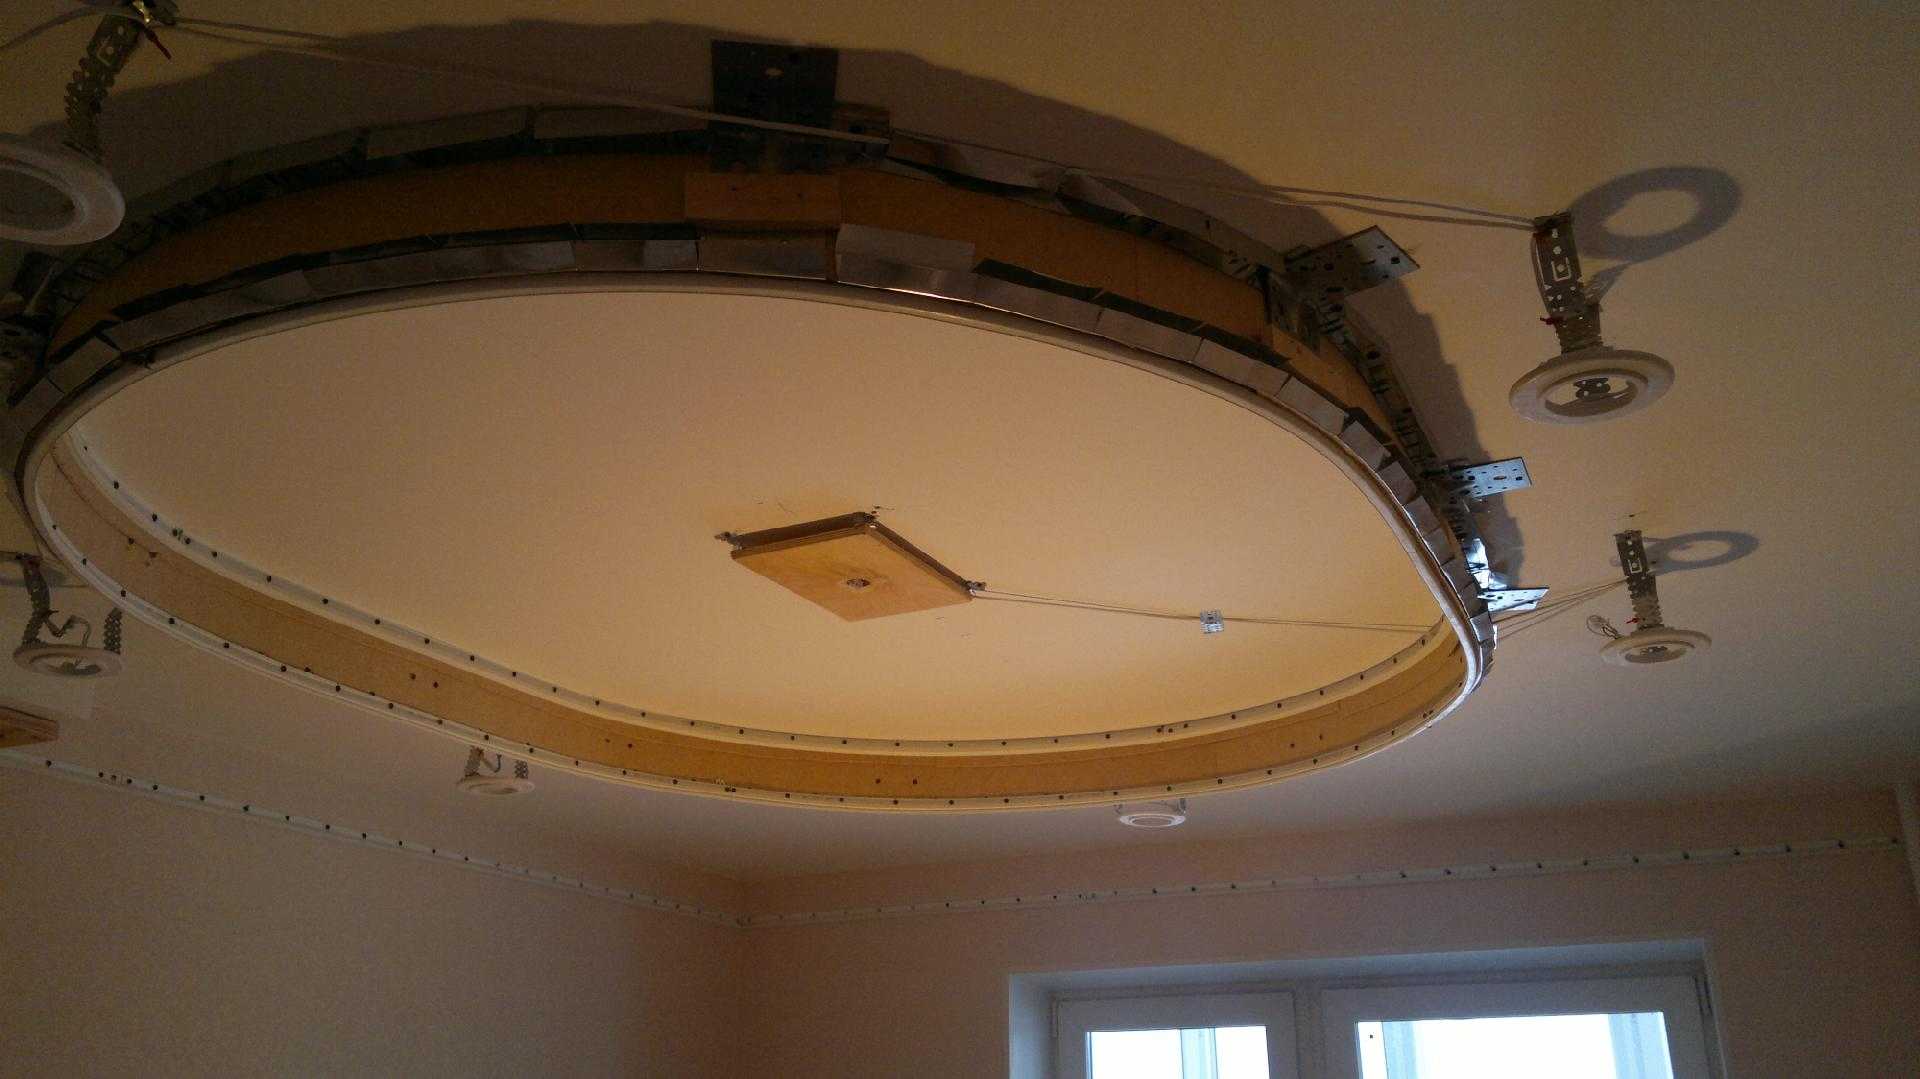 Монтаж двухуровневого натяжного потолка: установка профиля для двухуровневых конструкций своими руками, технология сборки потолка